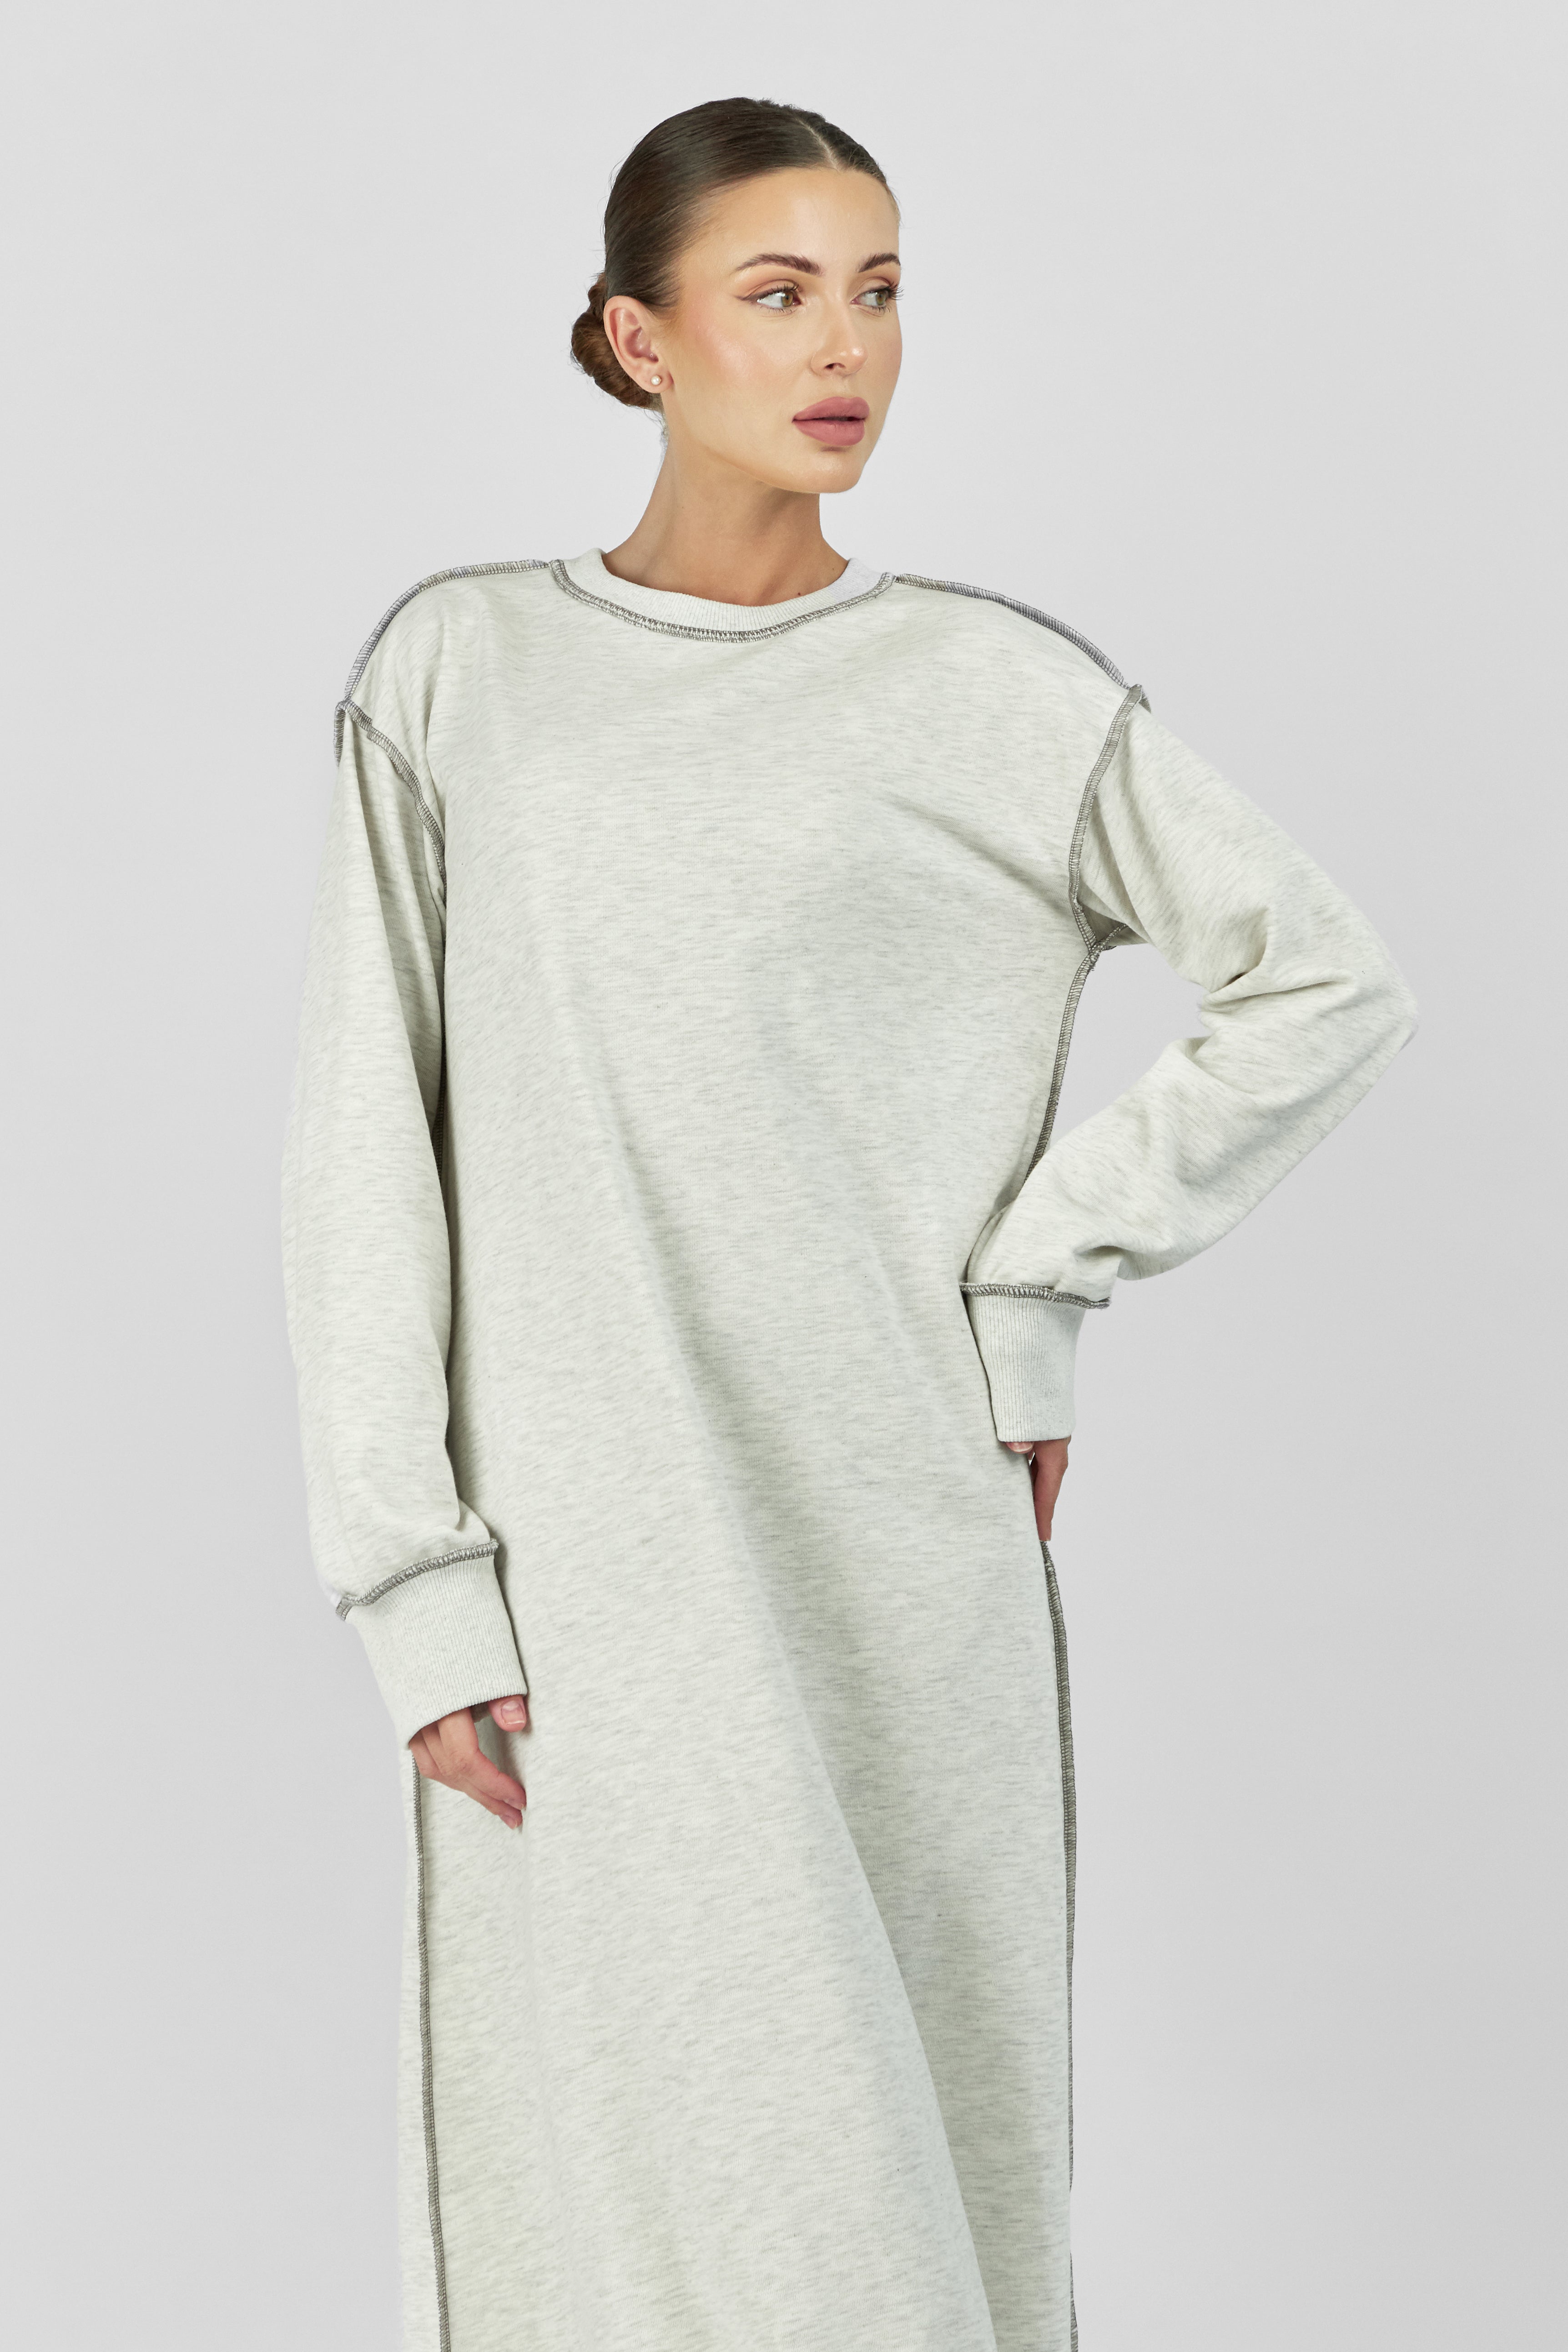 AE - Contrast Stitch Dress - Warm Grey